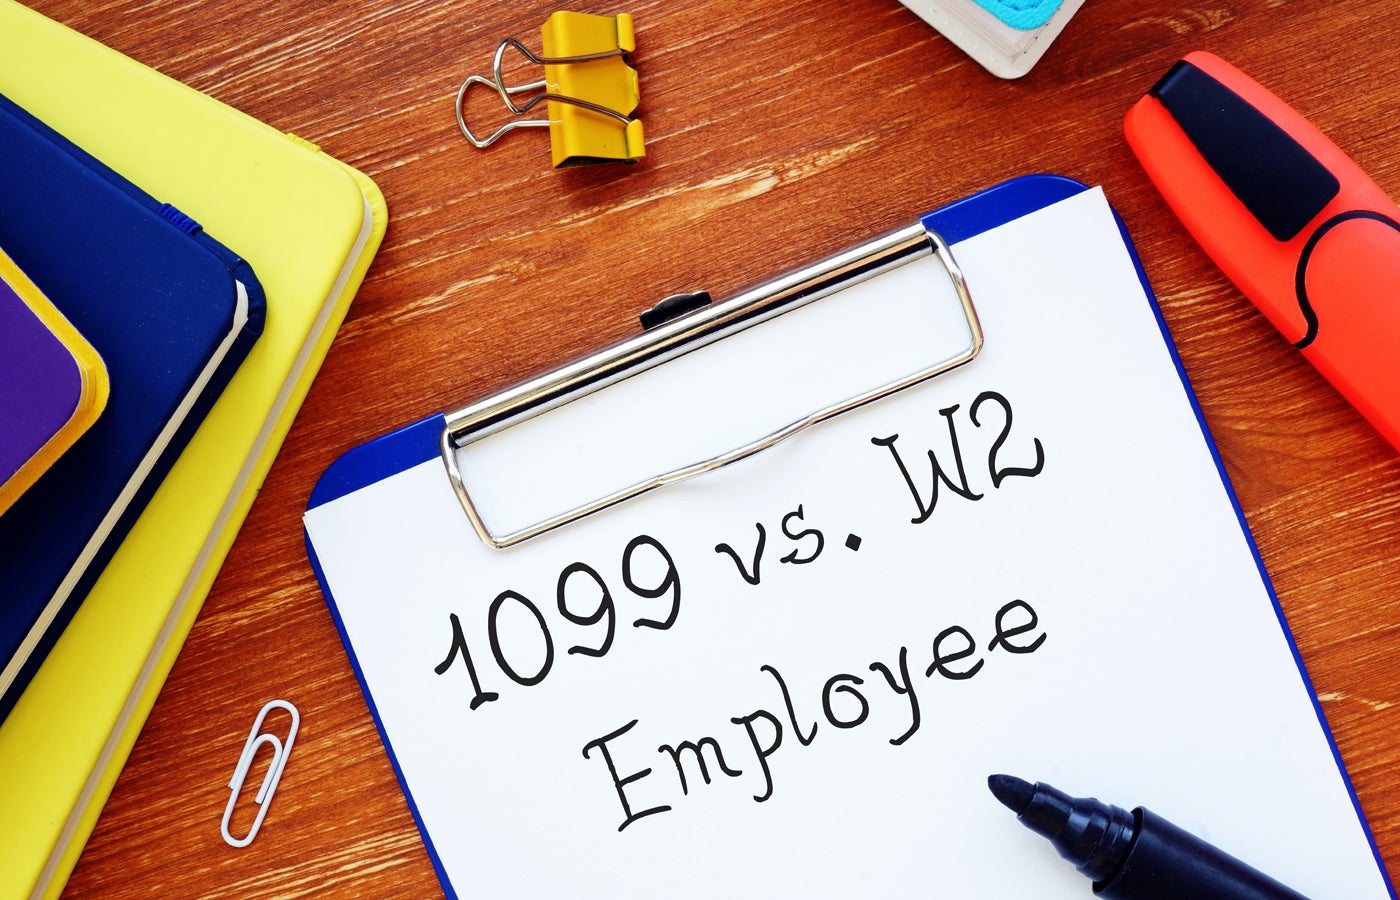 Contratistas 1099 versus empleados W-2: clasifique a sus empleados